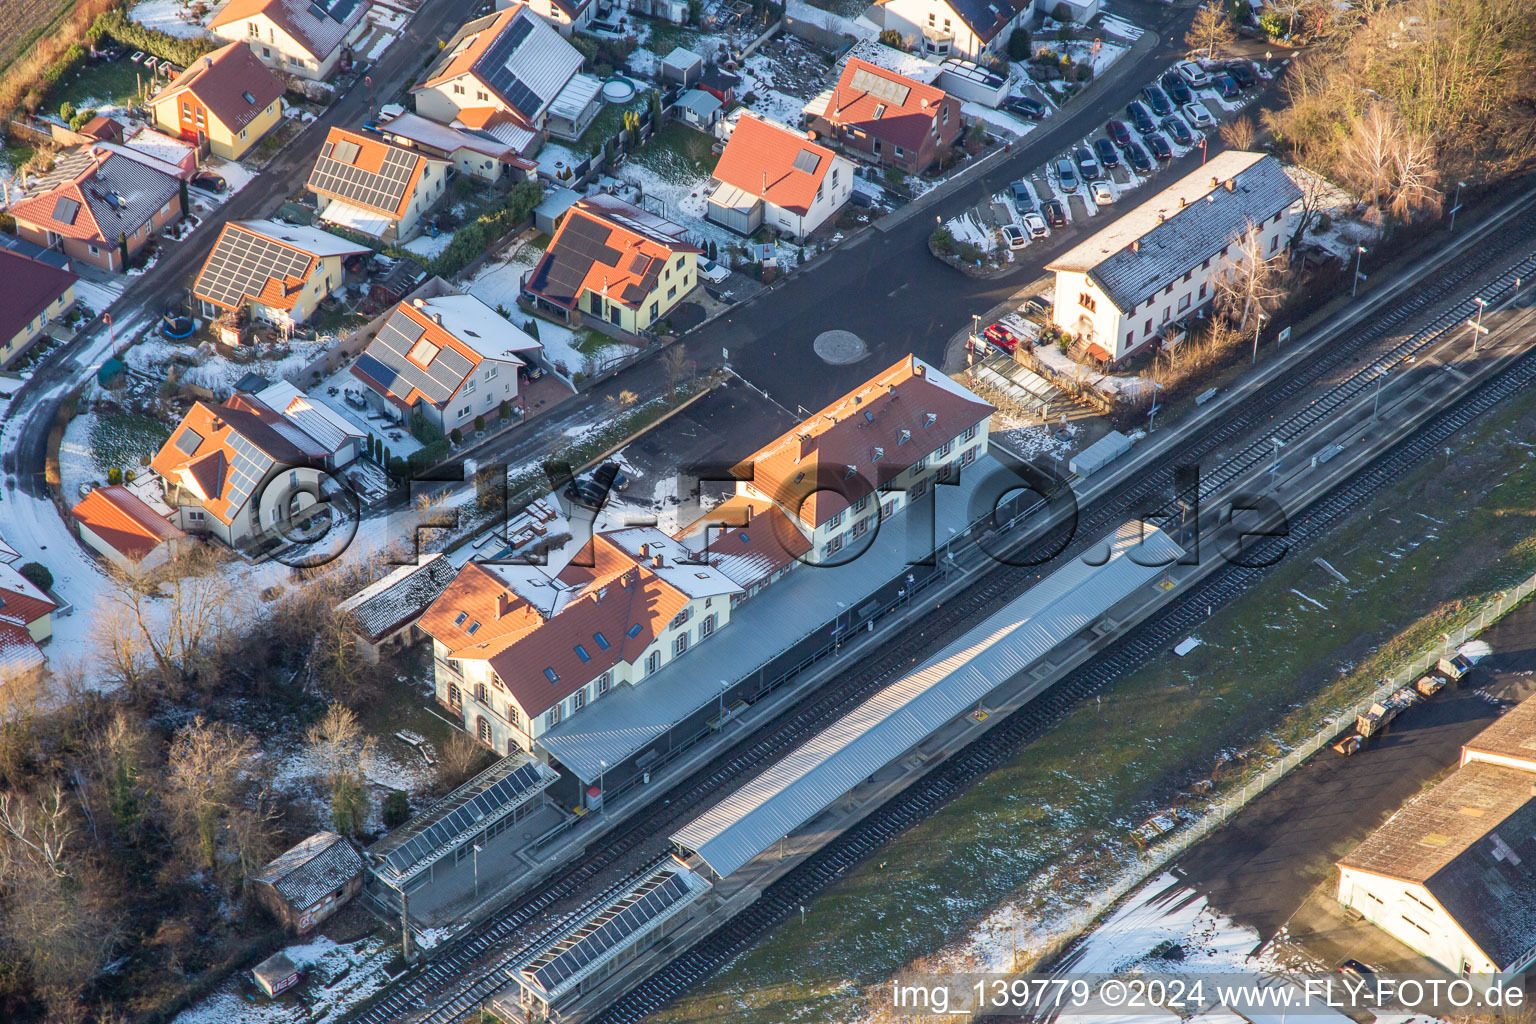 Luftbild von Bahnhof Winden und Neubaugebiet Am bhf im Bundesland Rheinland-Pfalz, Deutschland